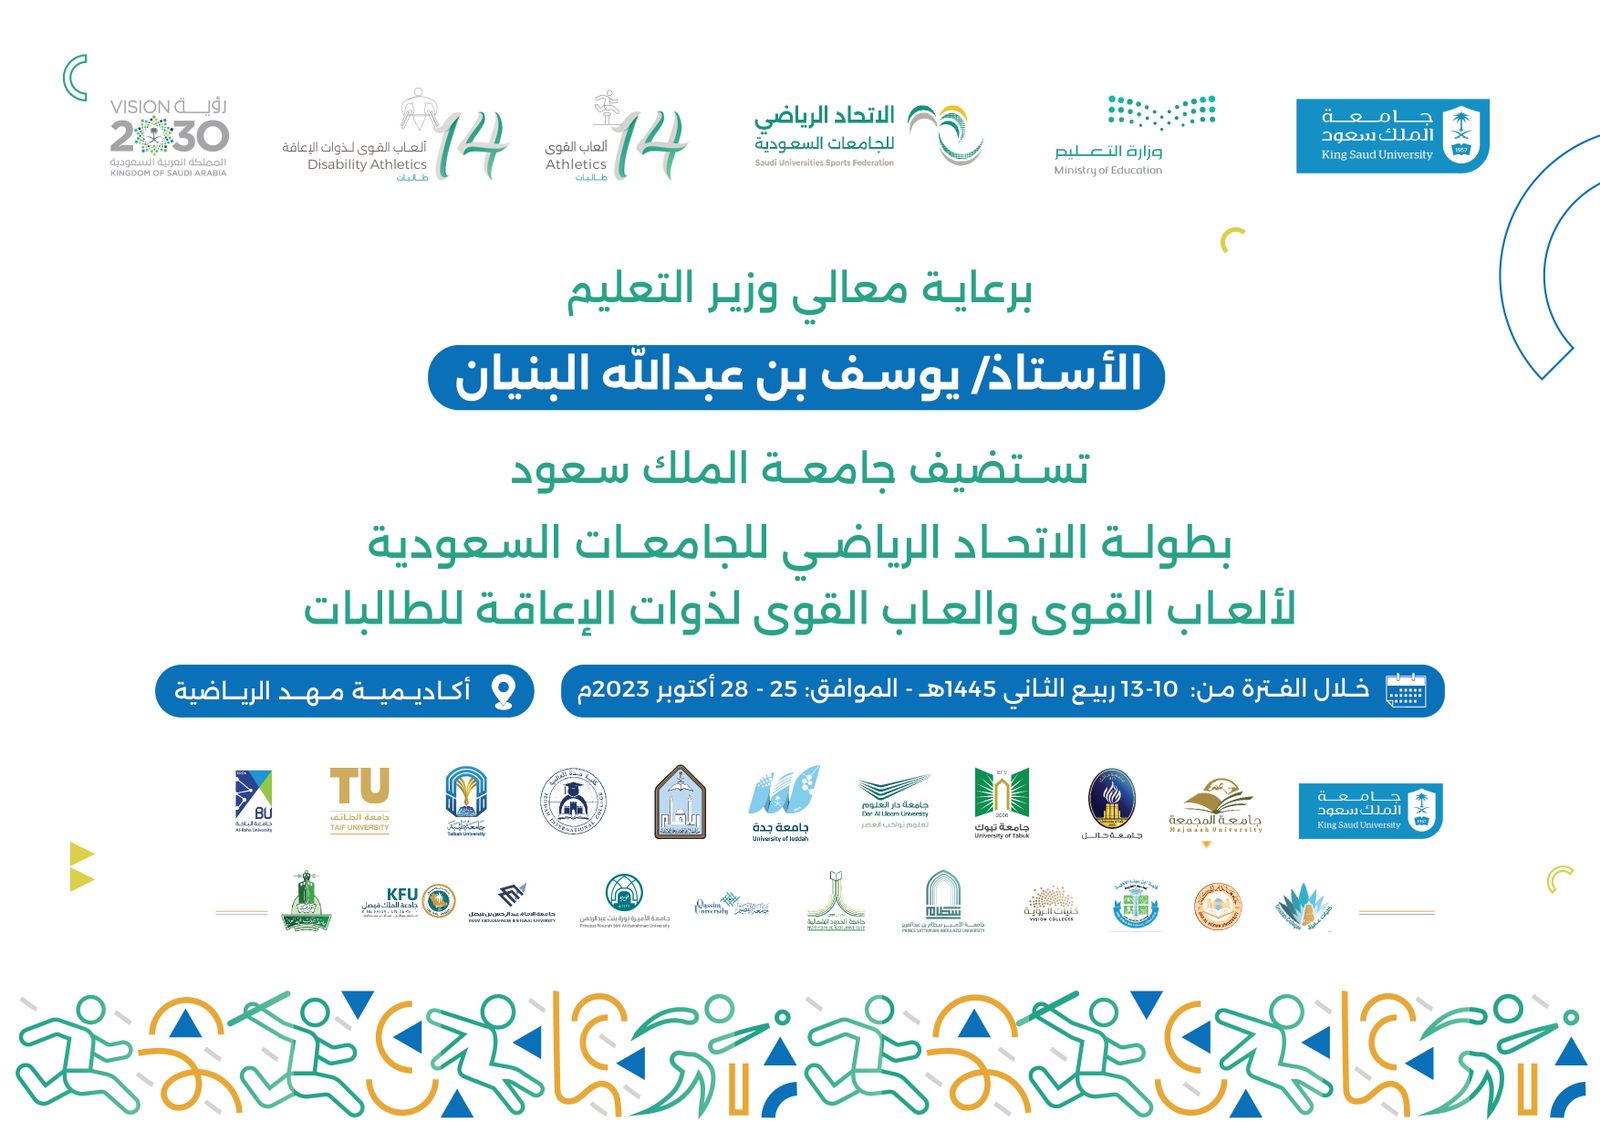 بطولة الاتحاد الرياضي للجامعات السعودية لألعاب القوى والعاب القوى لذوات الإعاقة للطالبات